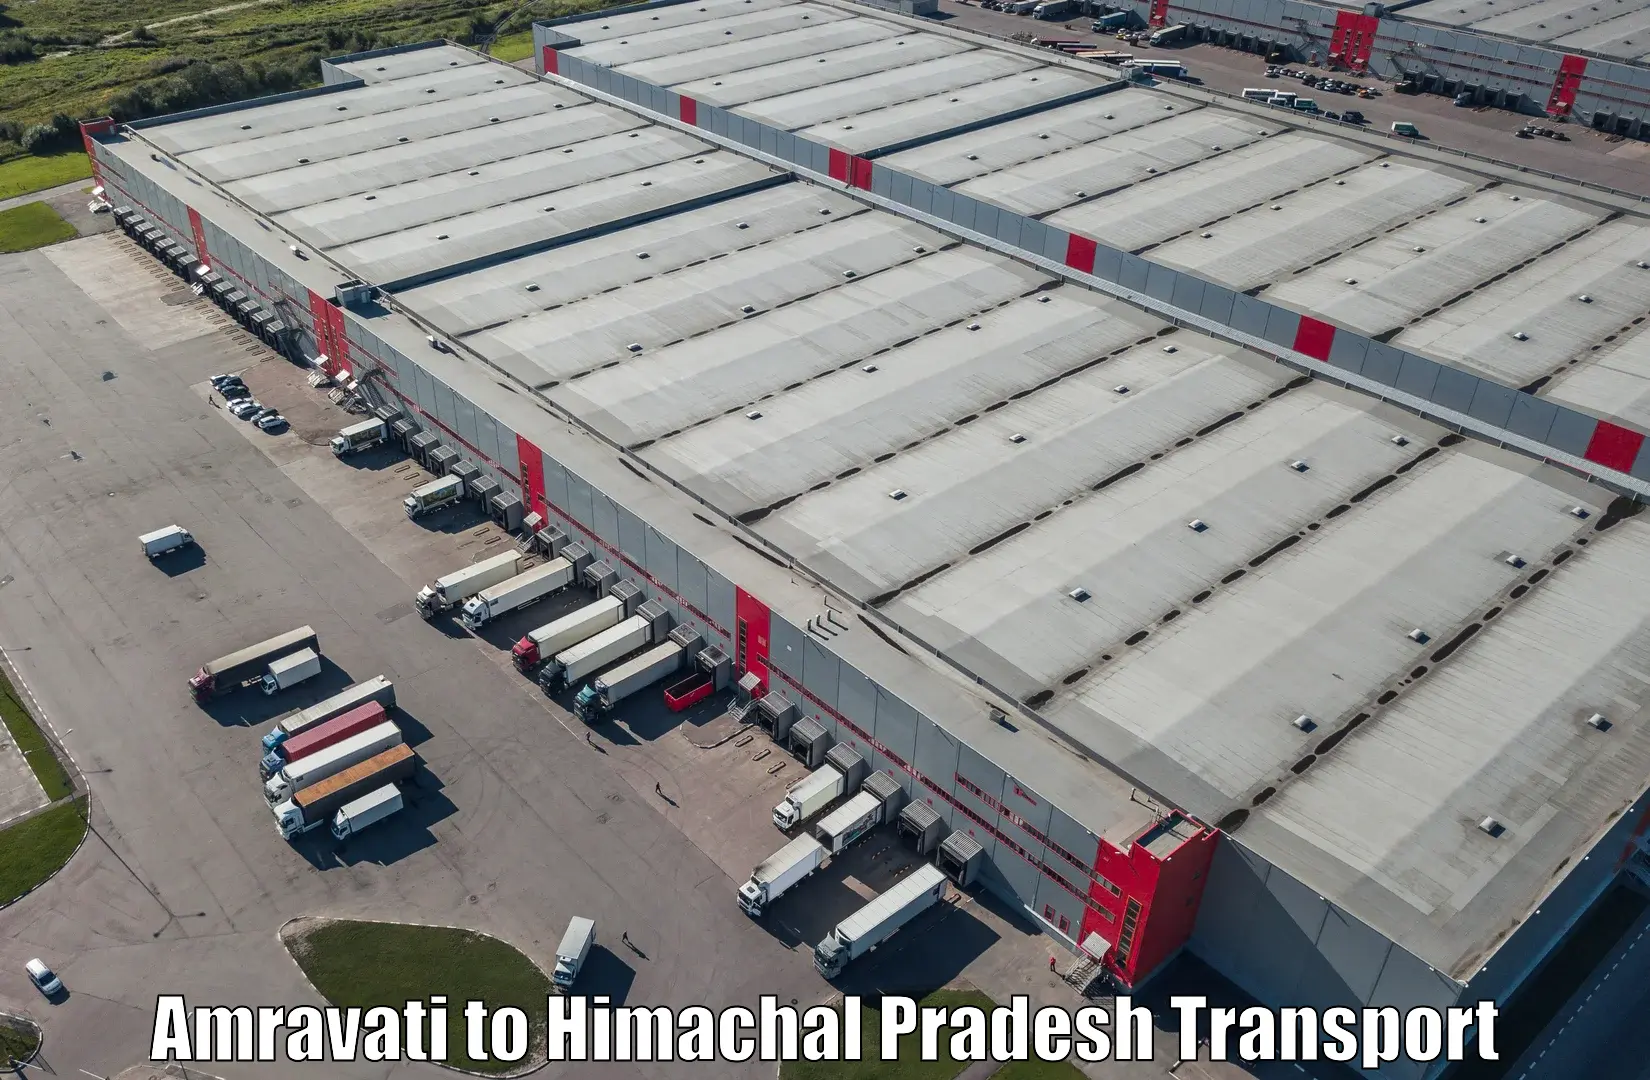 Transport shared services Amravati to Joginder Nagar